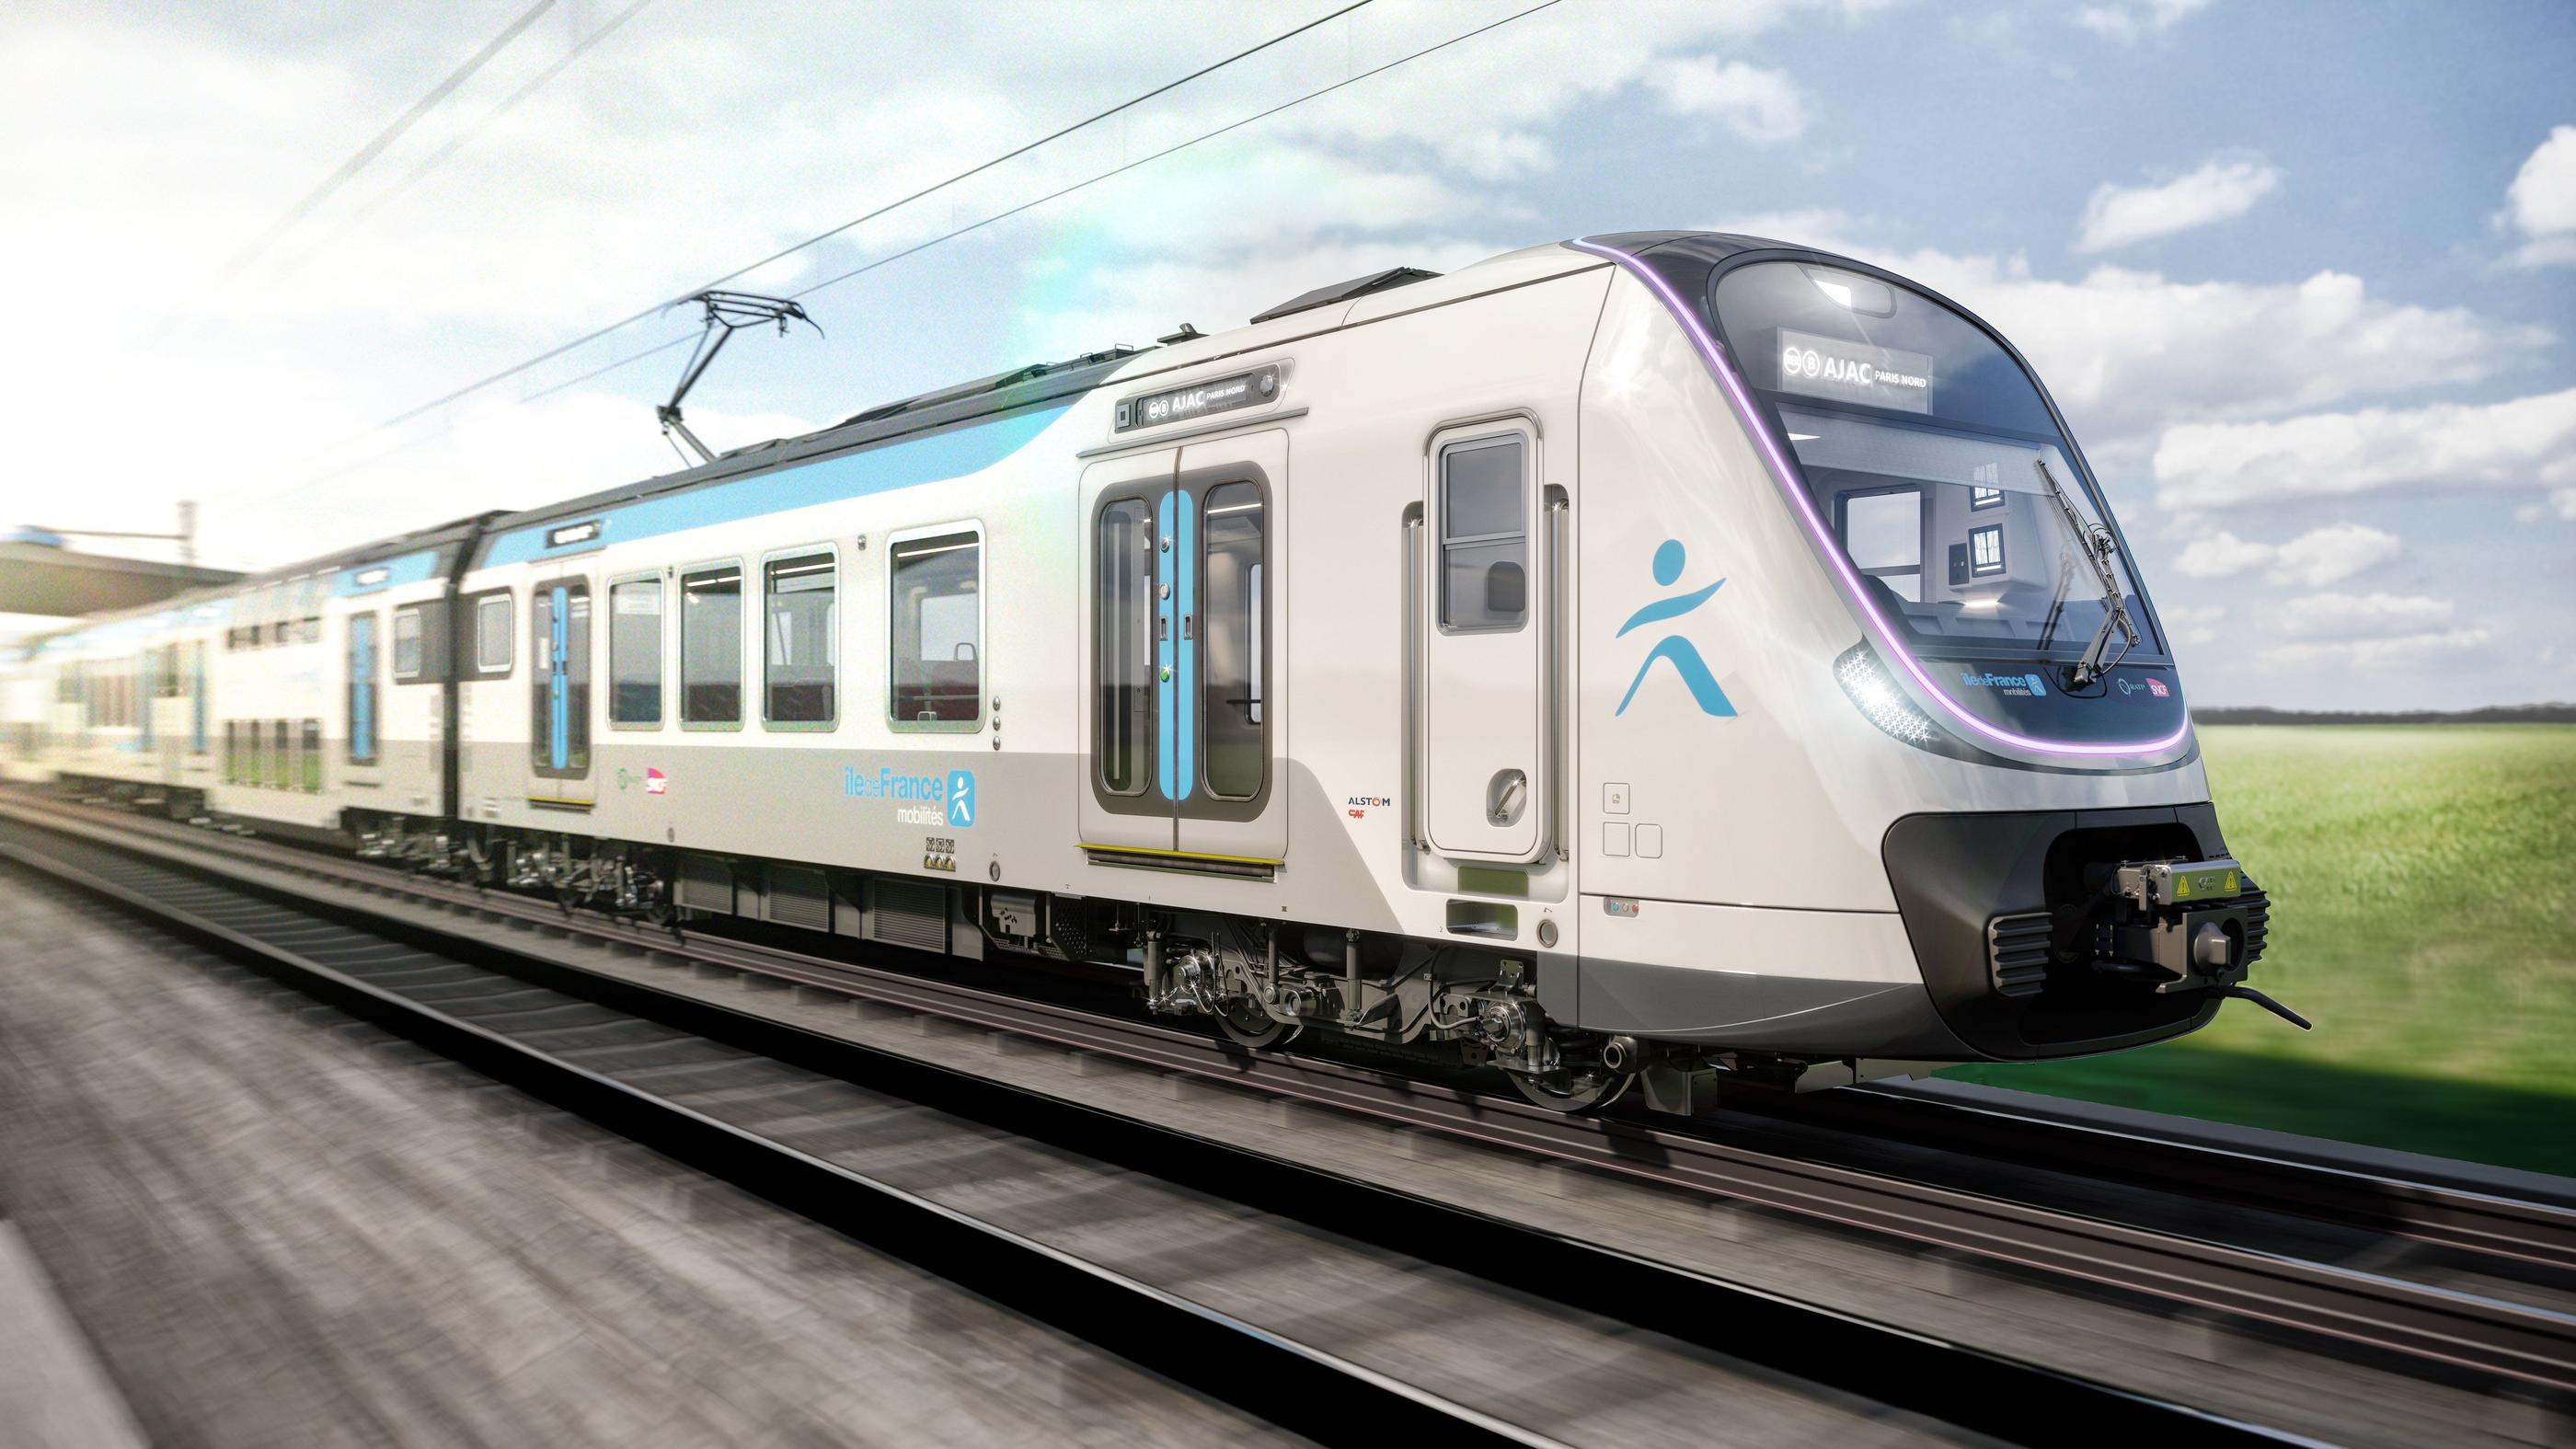 L'apparence des futurs trains du RER B, les MI20, construits par Alstom. Ces 146 rames de nouvelle génération, à deux niveaux et en forme boa pour circuler d’un bout à l’autre, doivent offrir de meilleures conditions de voyage, avec notamment de la climatisation. DR/IDFM